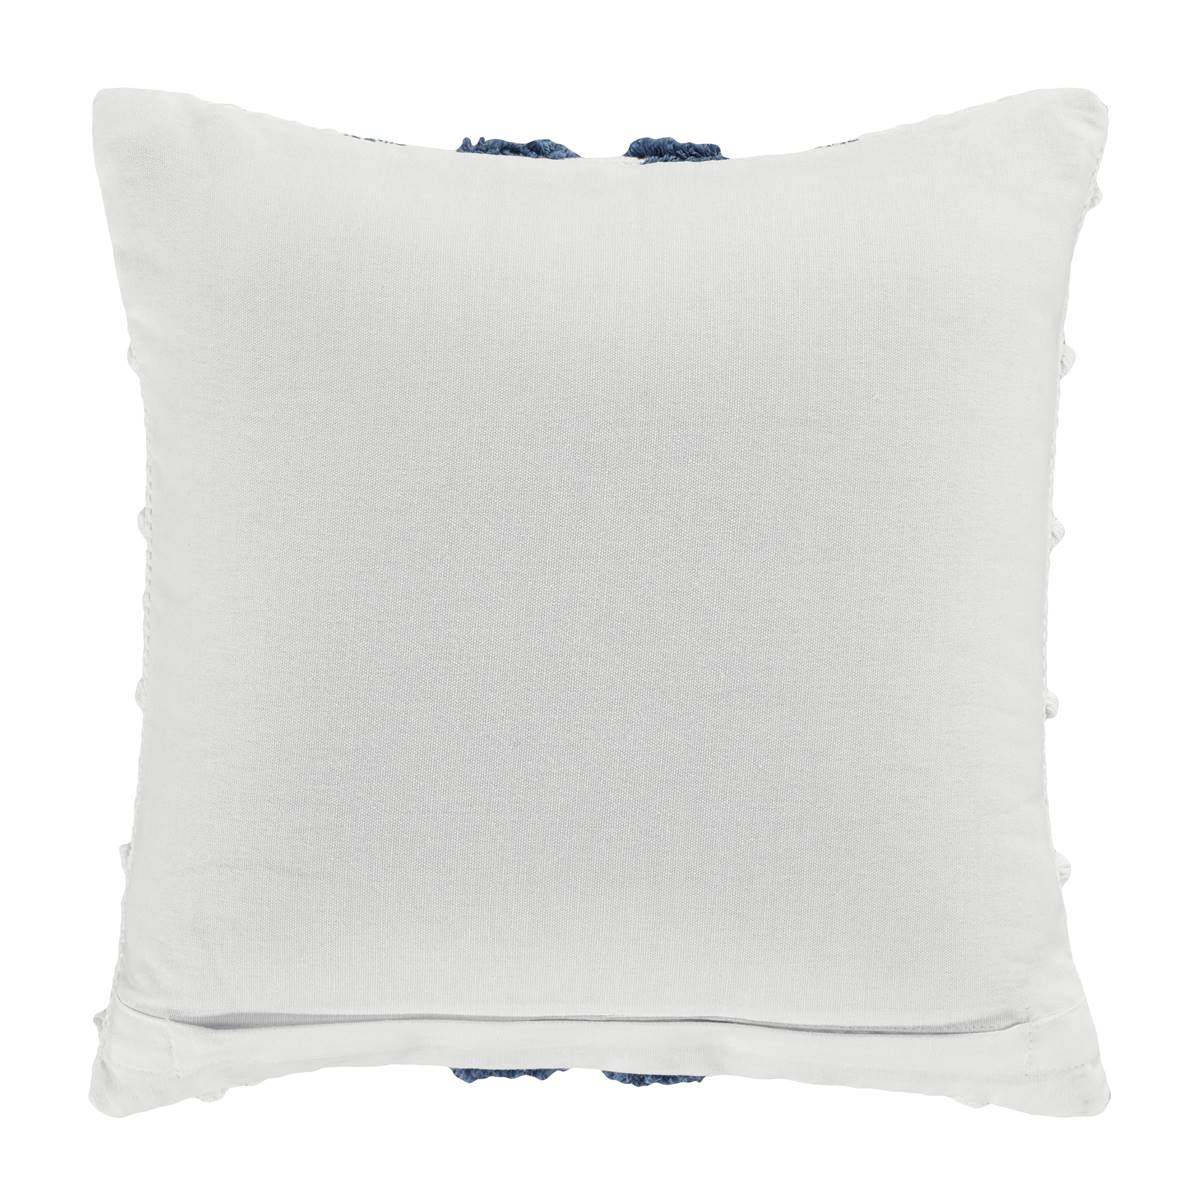 White Sand Serenity Decorative Throw Pillow - 18x18